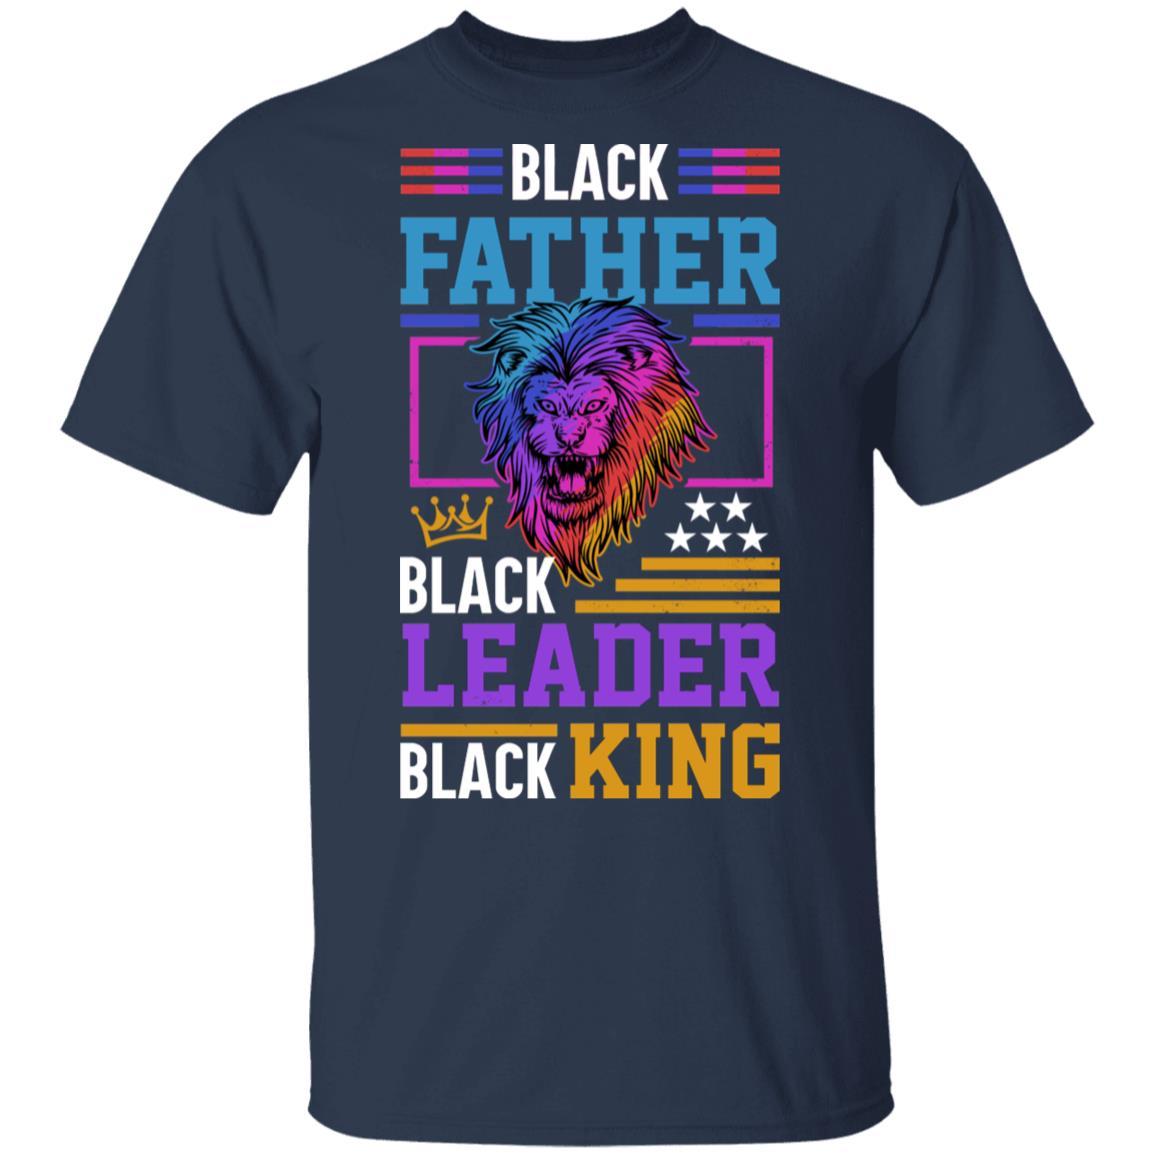 Black Leader Black King T-Shirt & Hoodie Apparel CustomCat Unisex Tee Navy S